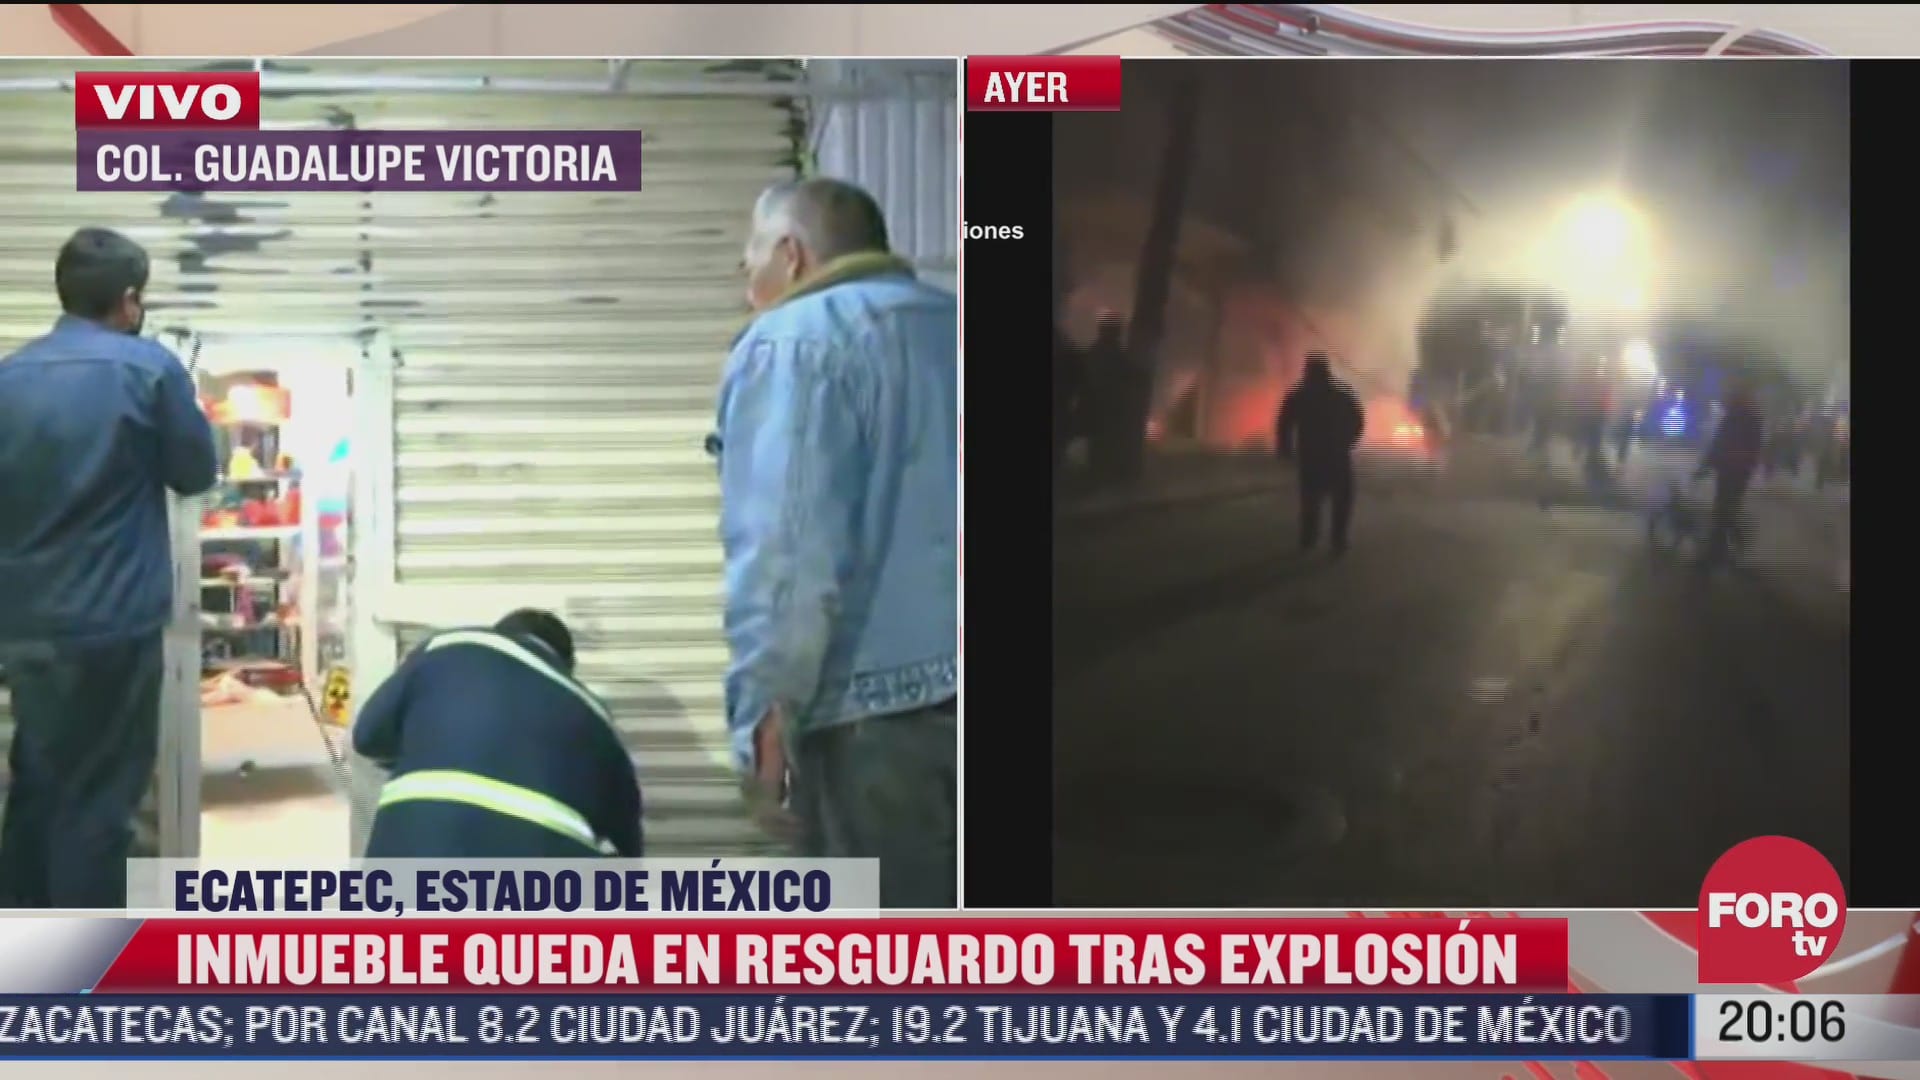 asi quedaron los comercios siniestrados tras explosion en ecatepec vecinos temen saqueos